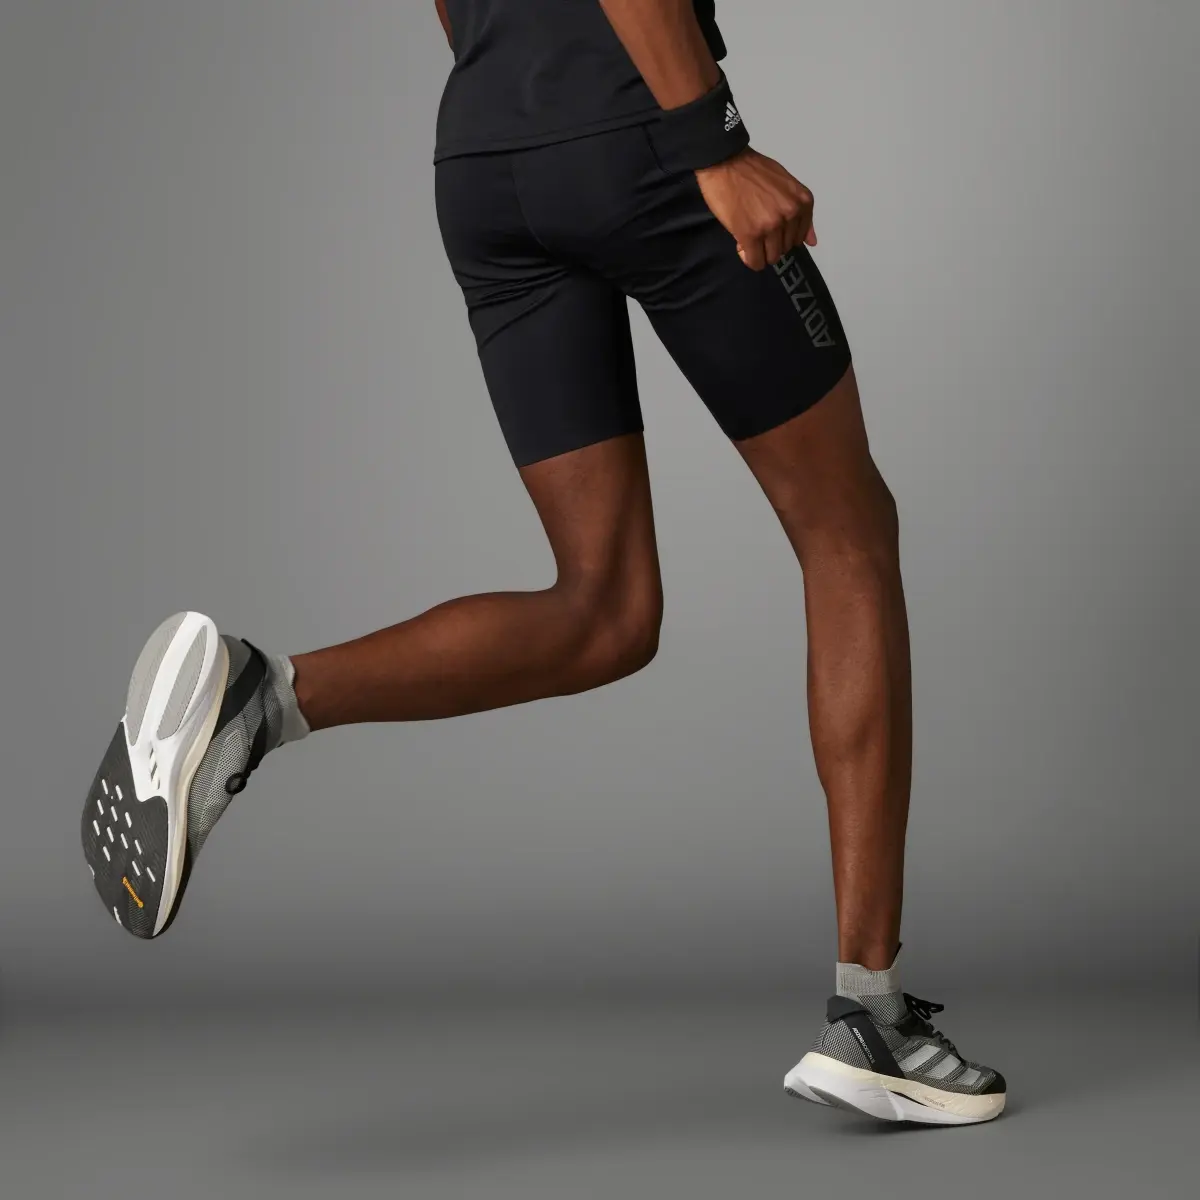 Adidas Adizero Running Short Leggings. 2